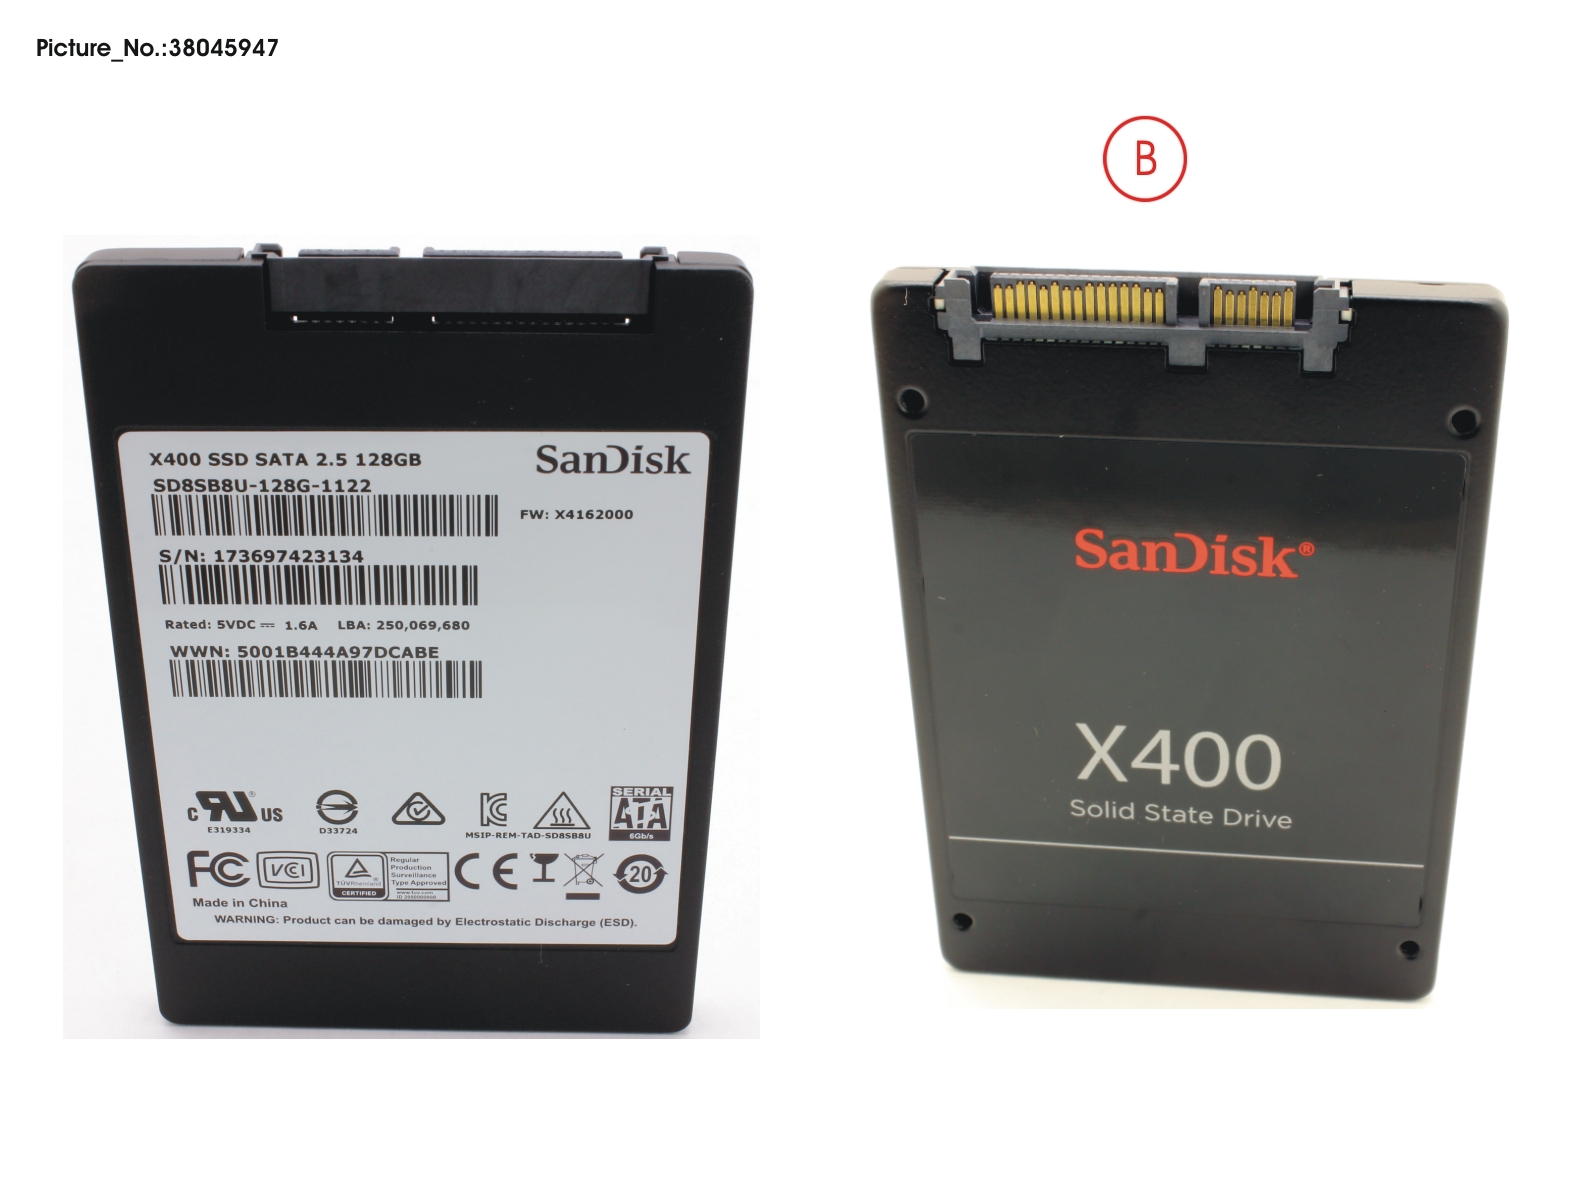 SSD S3 128GB 2.5 SATA/SAN (7MM)